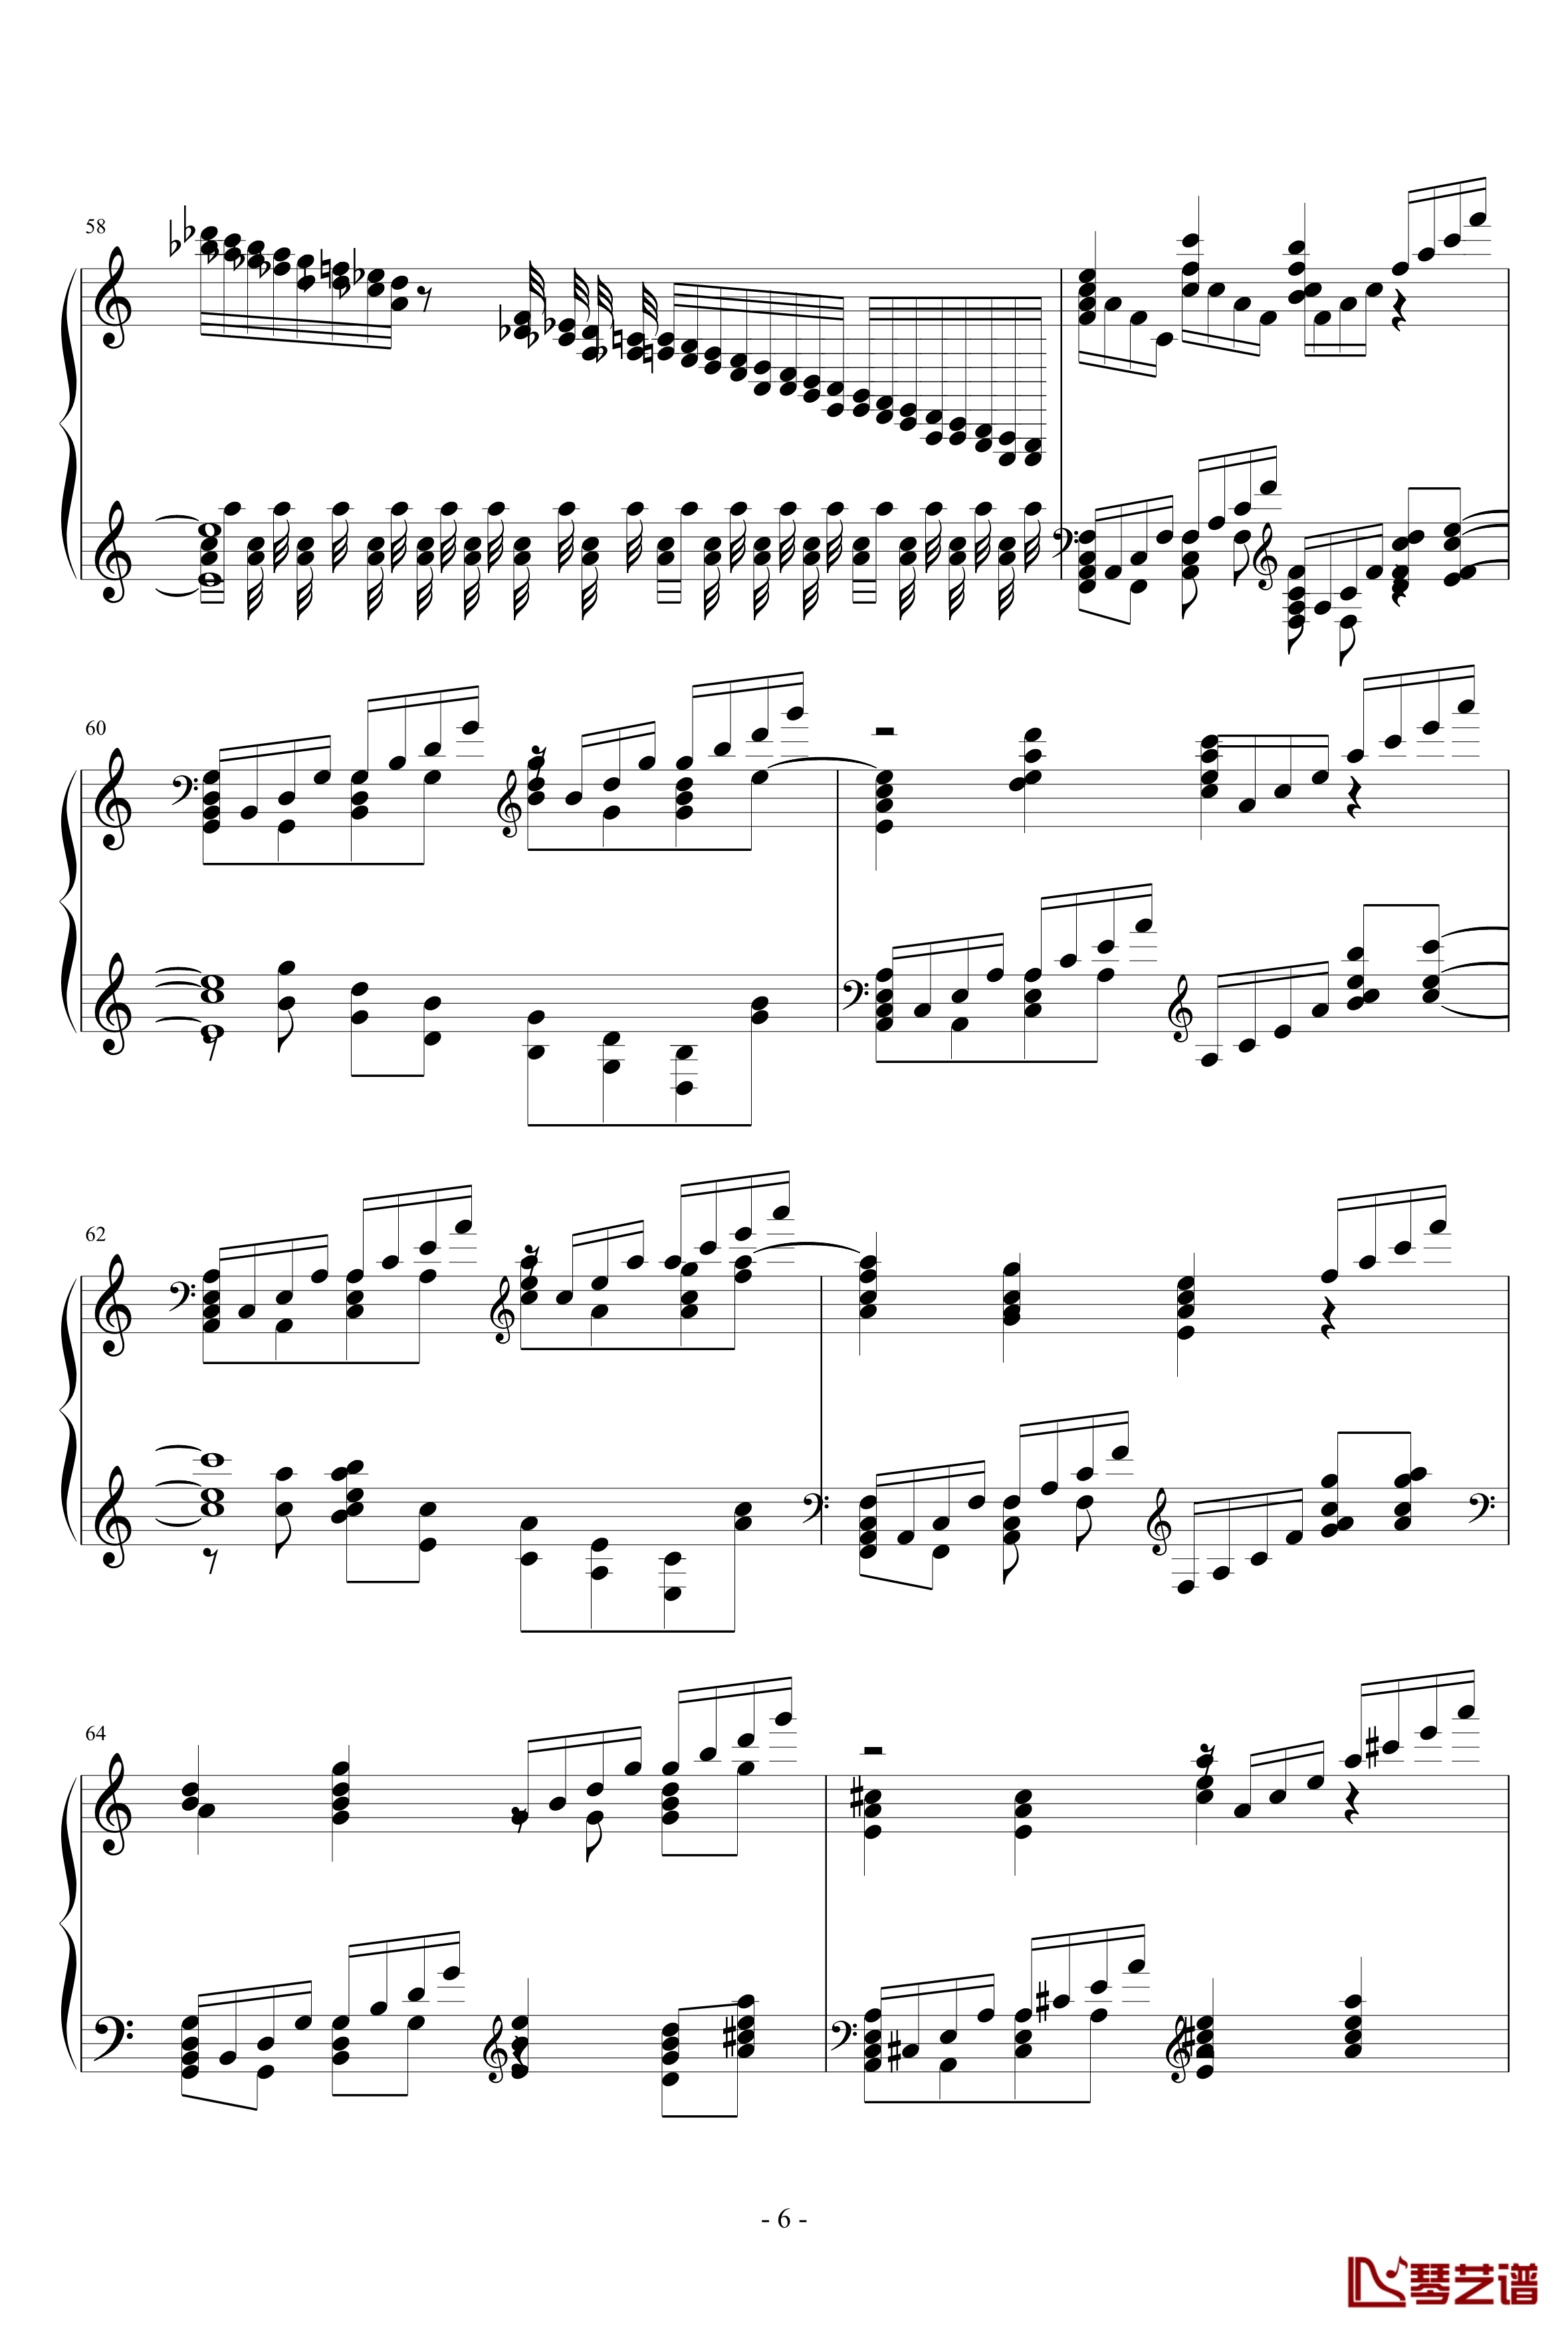 ネクロファンタジア钢琴谱-HARD-八云紫-东方project6